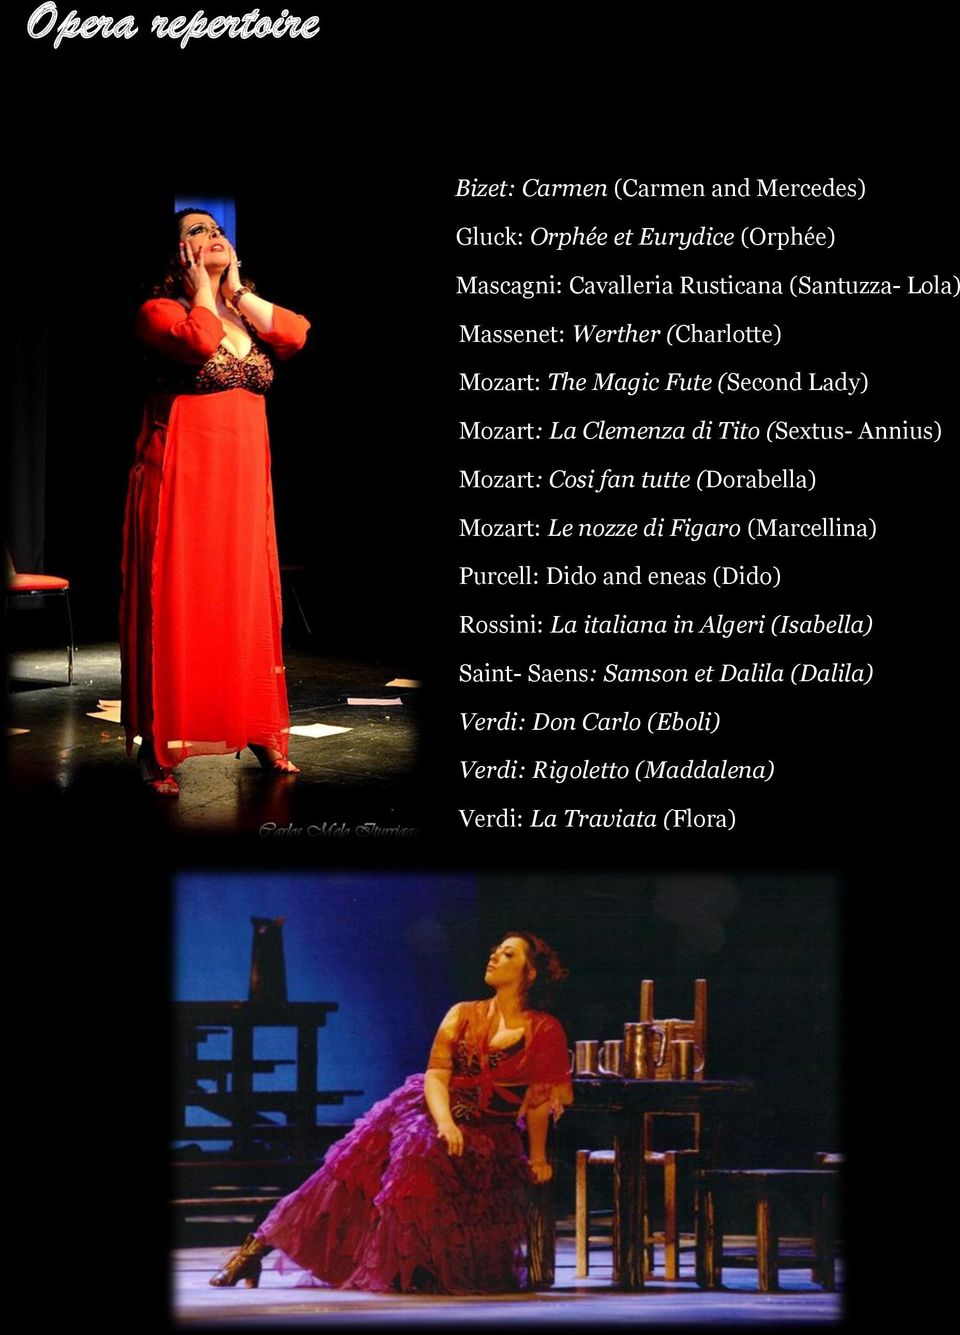 Mozart: Cosi fan tutte (Dorabella) Mozart: Le nozze di Figaro (Marcellina) Purcell: Dido and eneas (Dido) Rossini: La italiana